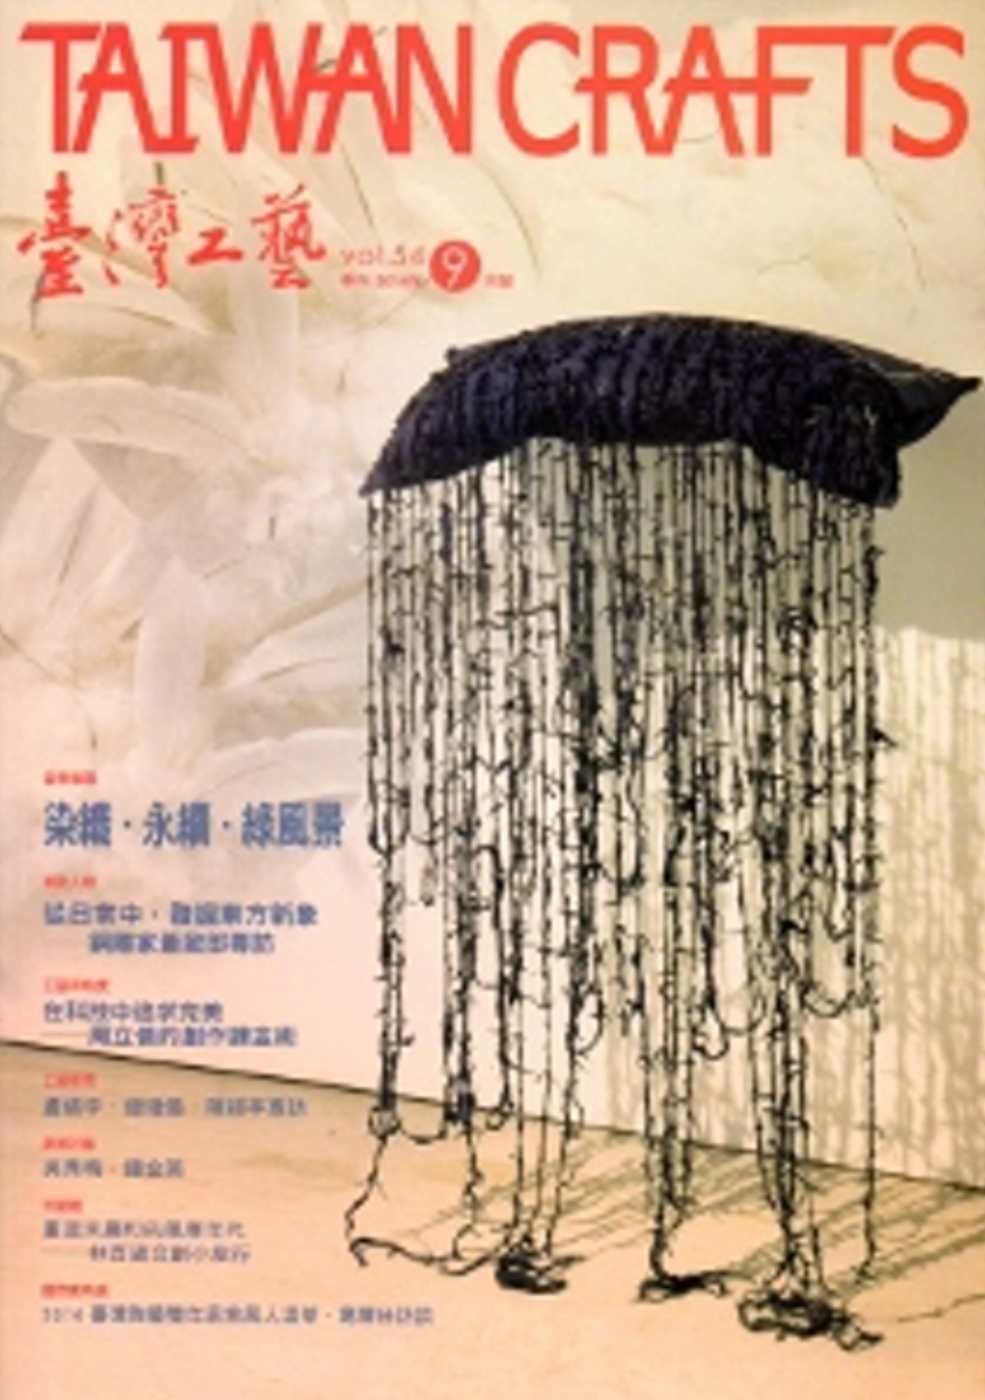 臺灣工藝季刊54期(2014.09月號)